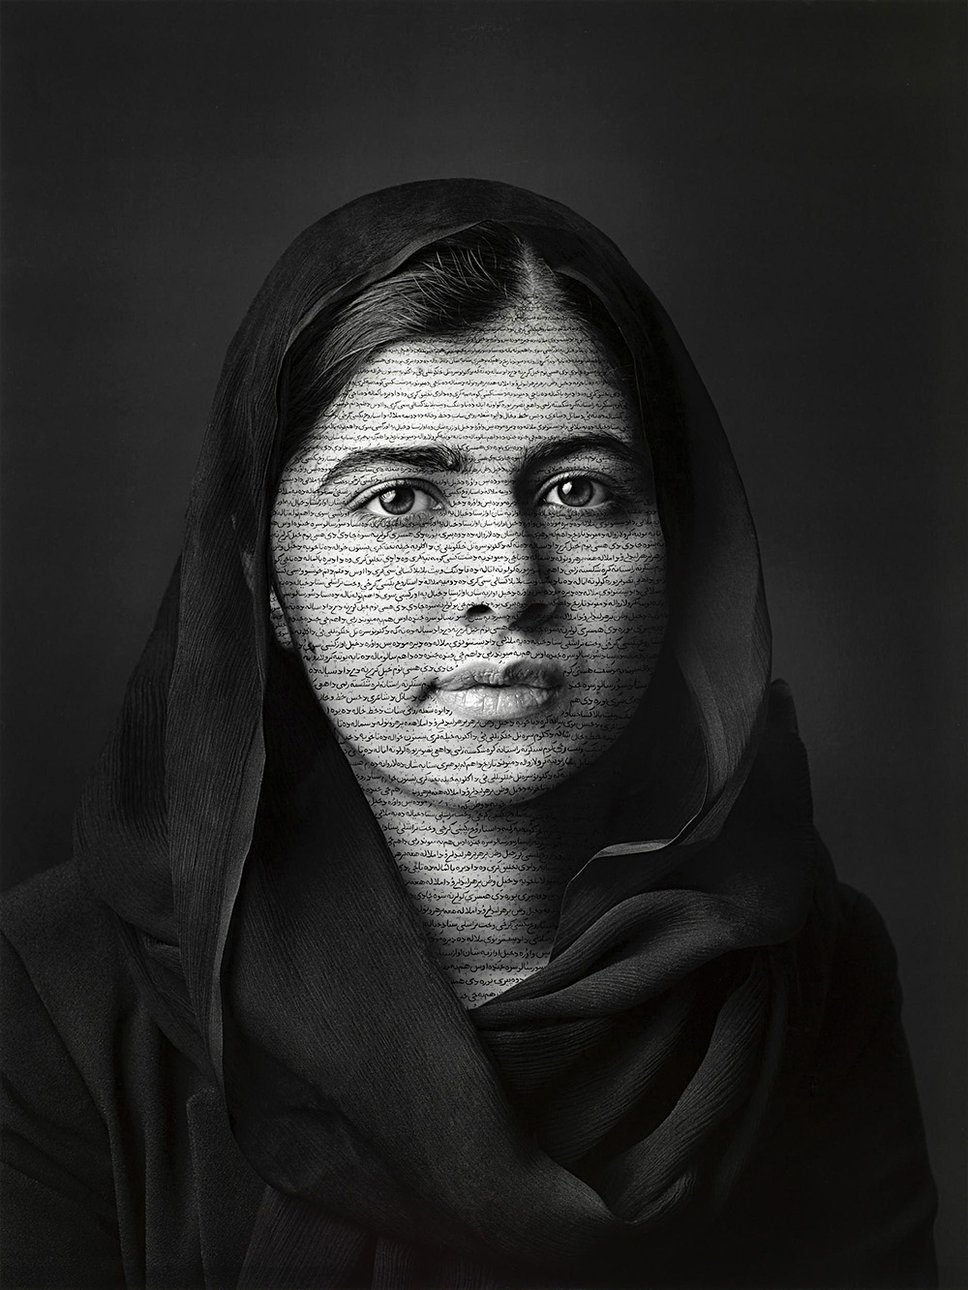 Ширин Нешат. «Малала Юсуфзай» (пакистанская правозащитница). 2018. Фото: National Portrait Gallery